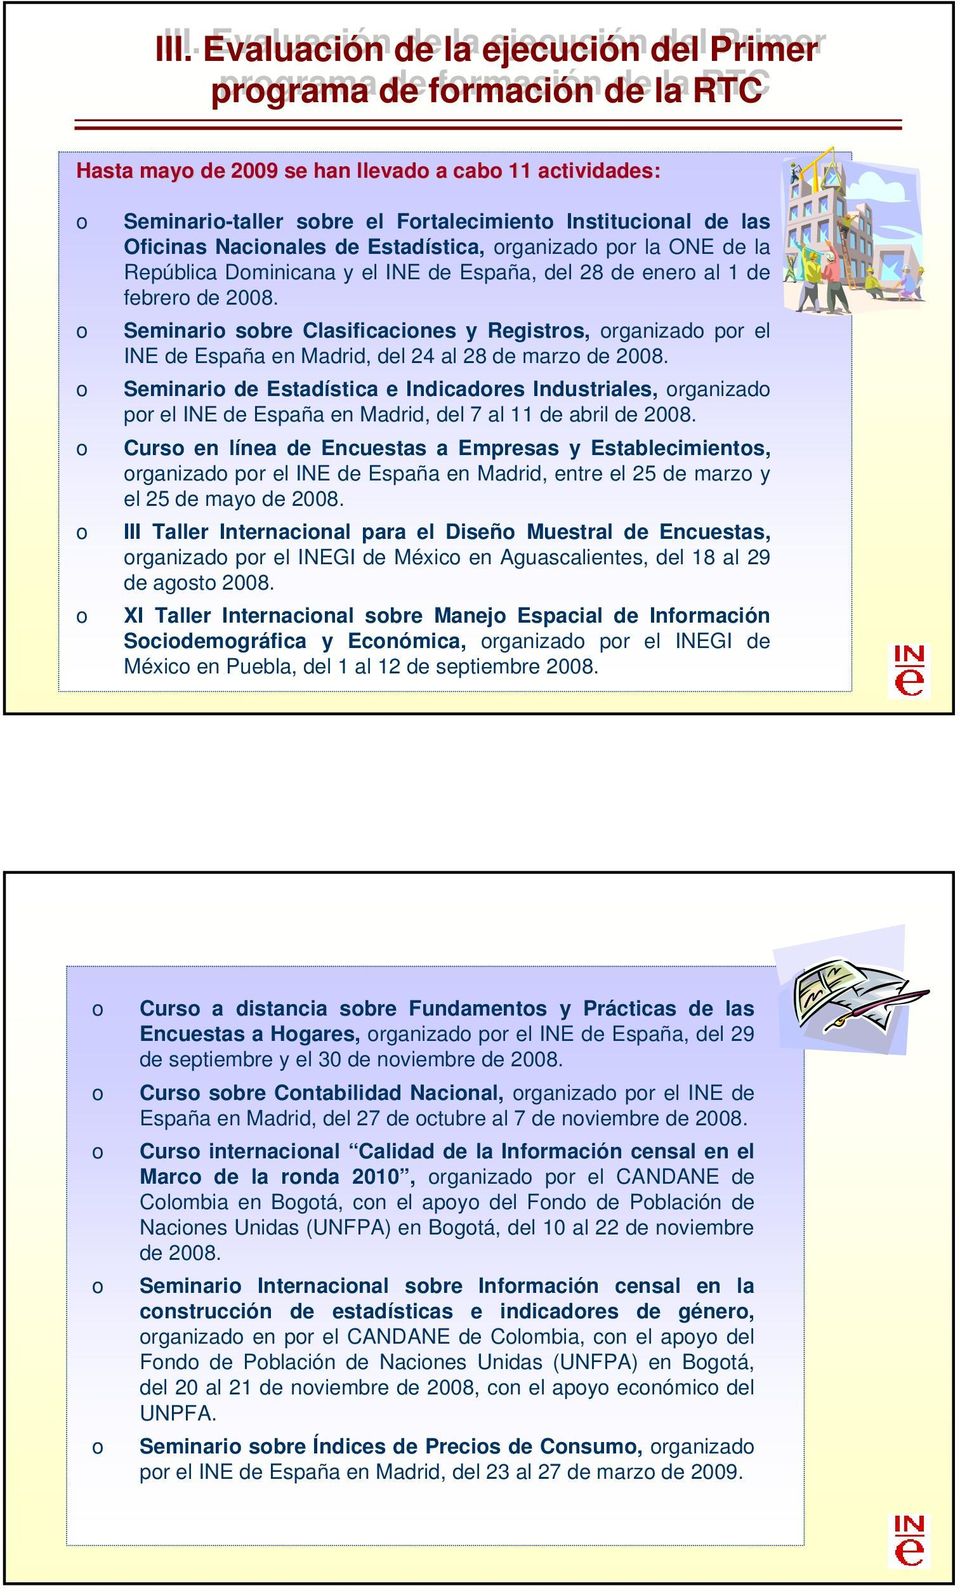 Seminari sbre Clasificacines y Registrs, rganizad pr el INE de España en Madrid, del 24 al 28 de marz de 2008.